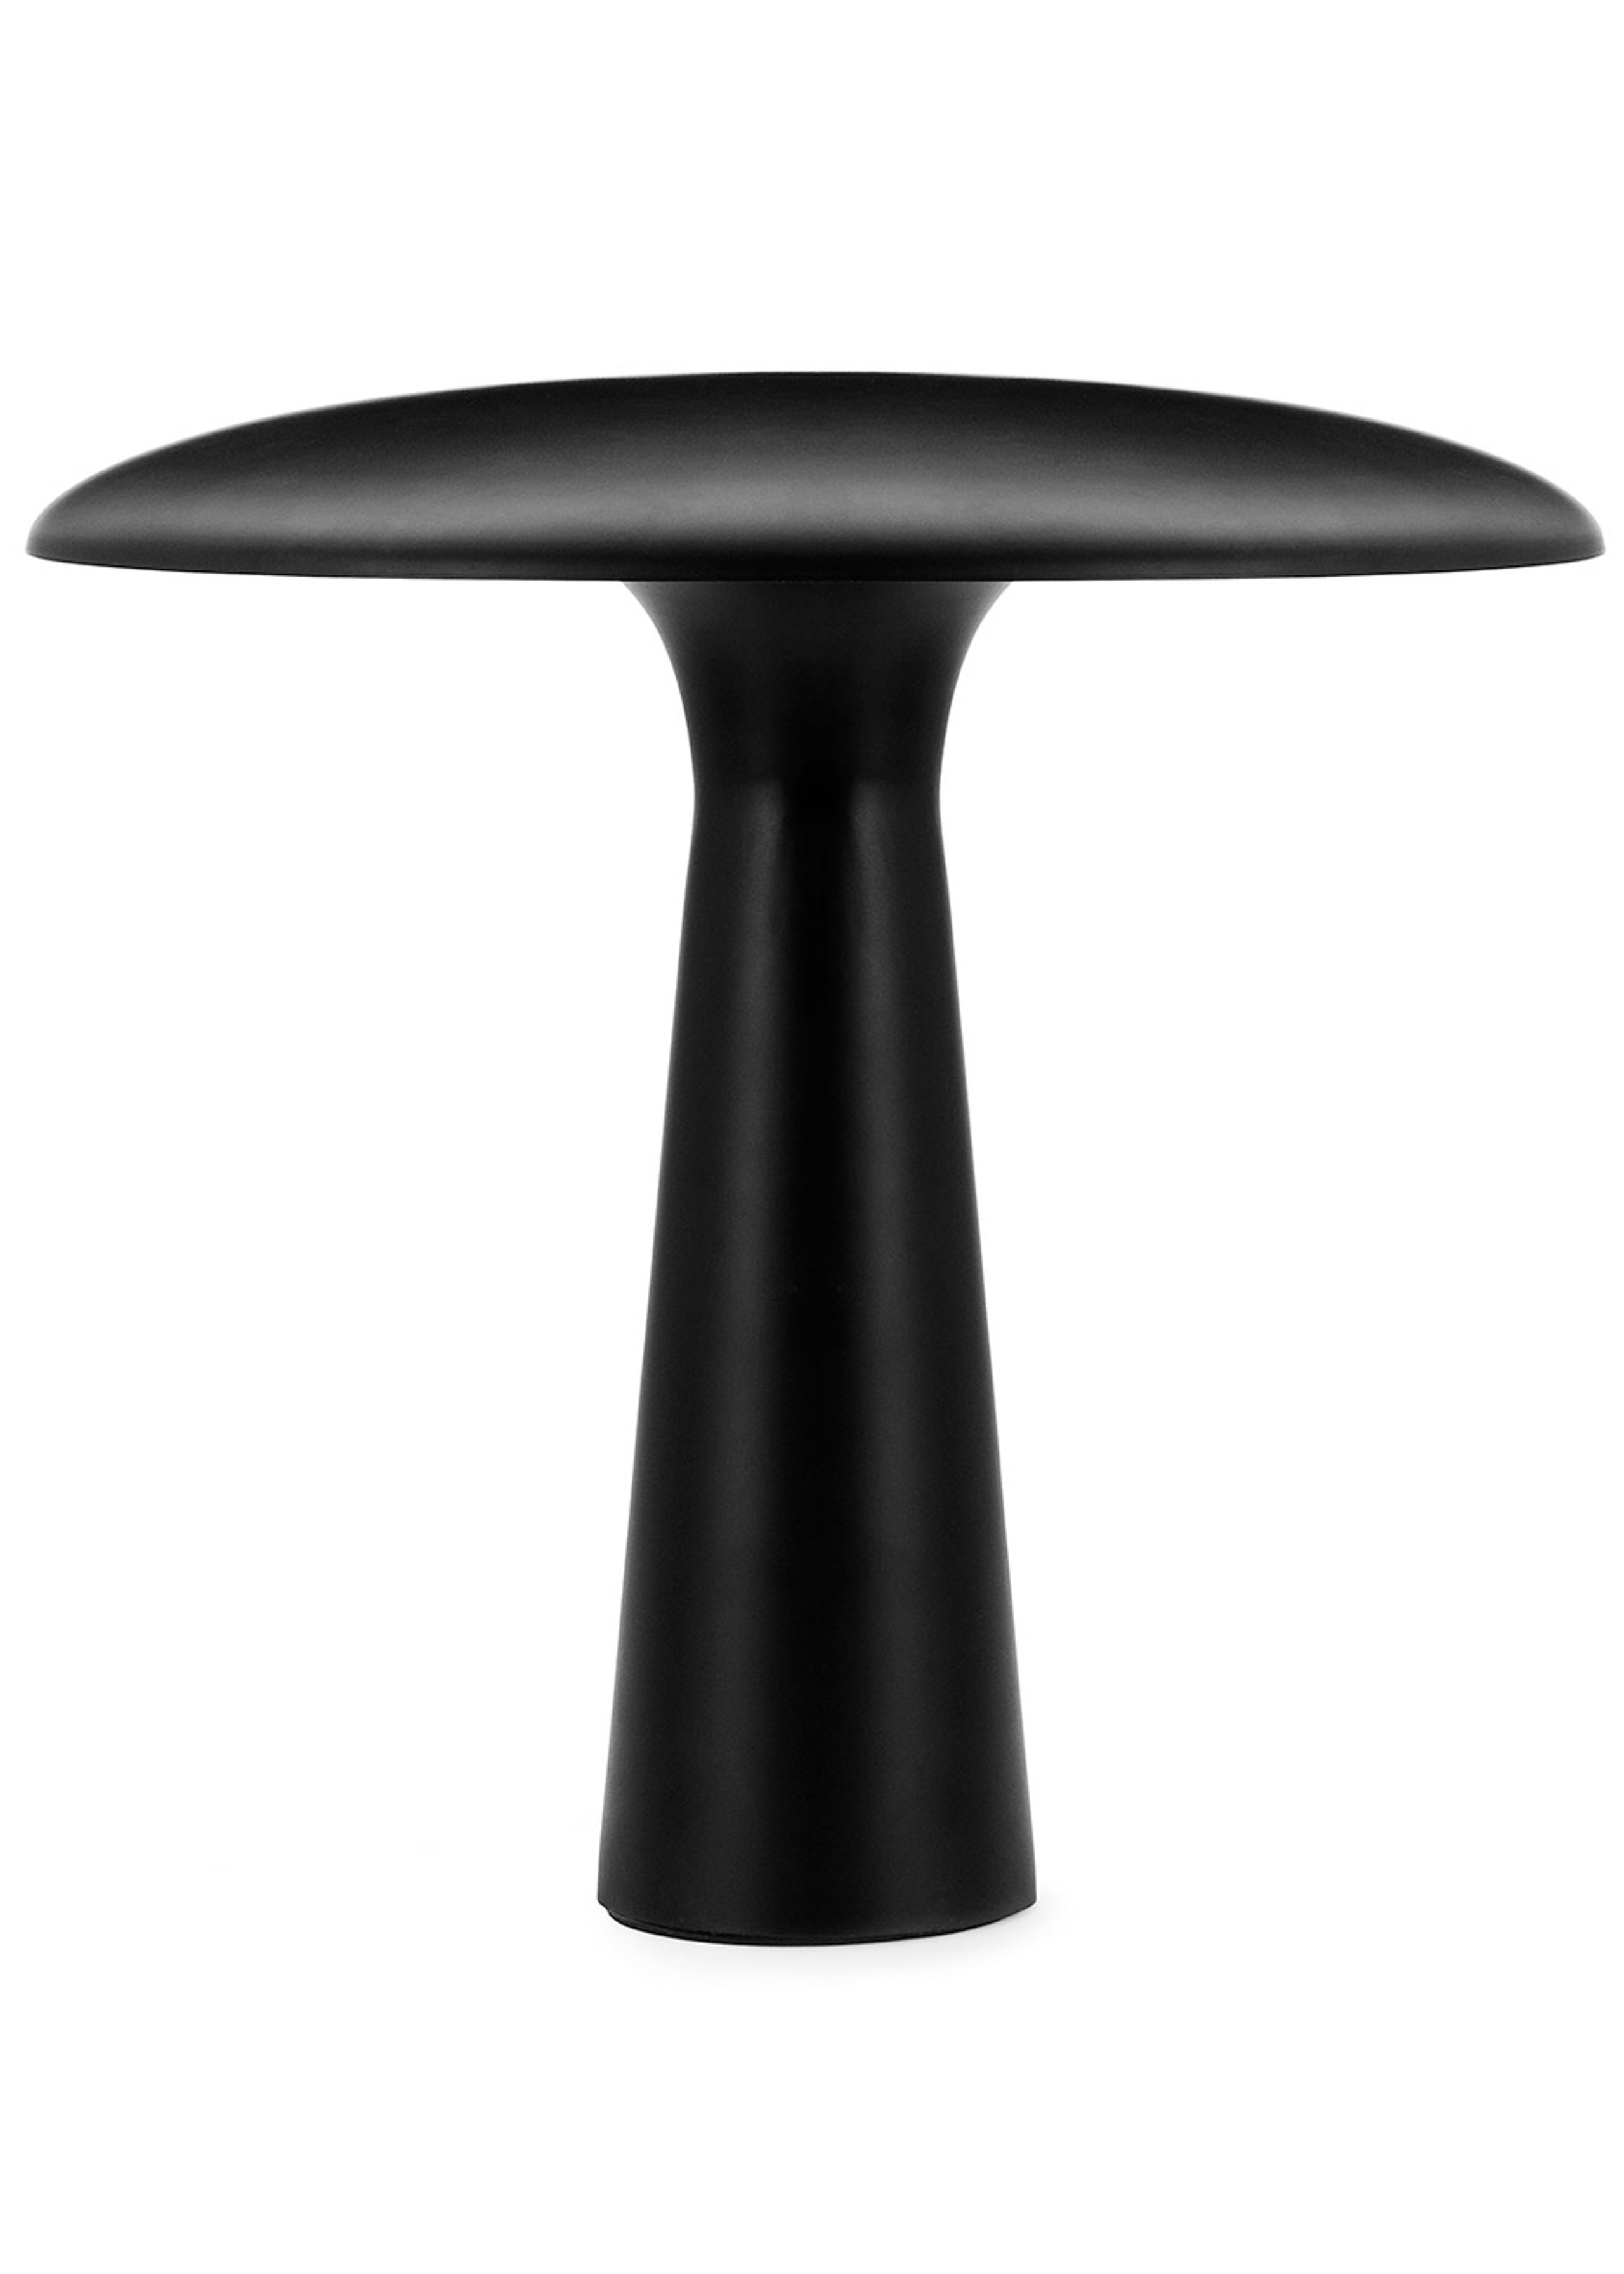 Normann Copenhagen - Table Lamp - Shelter table lamp - Black